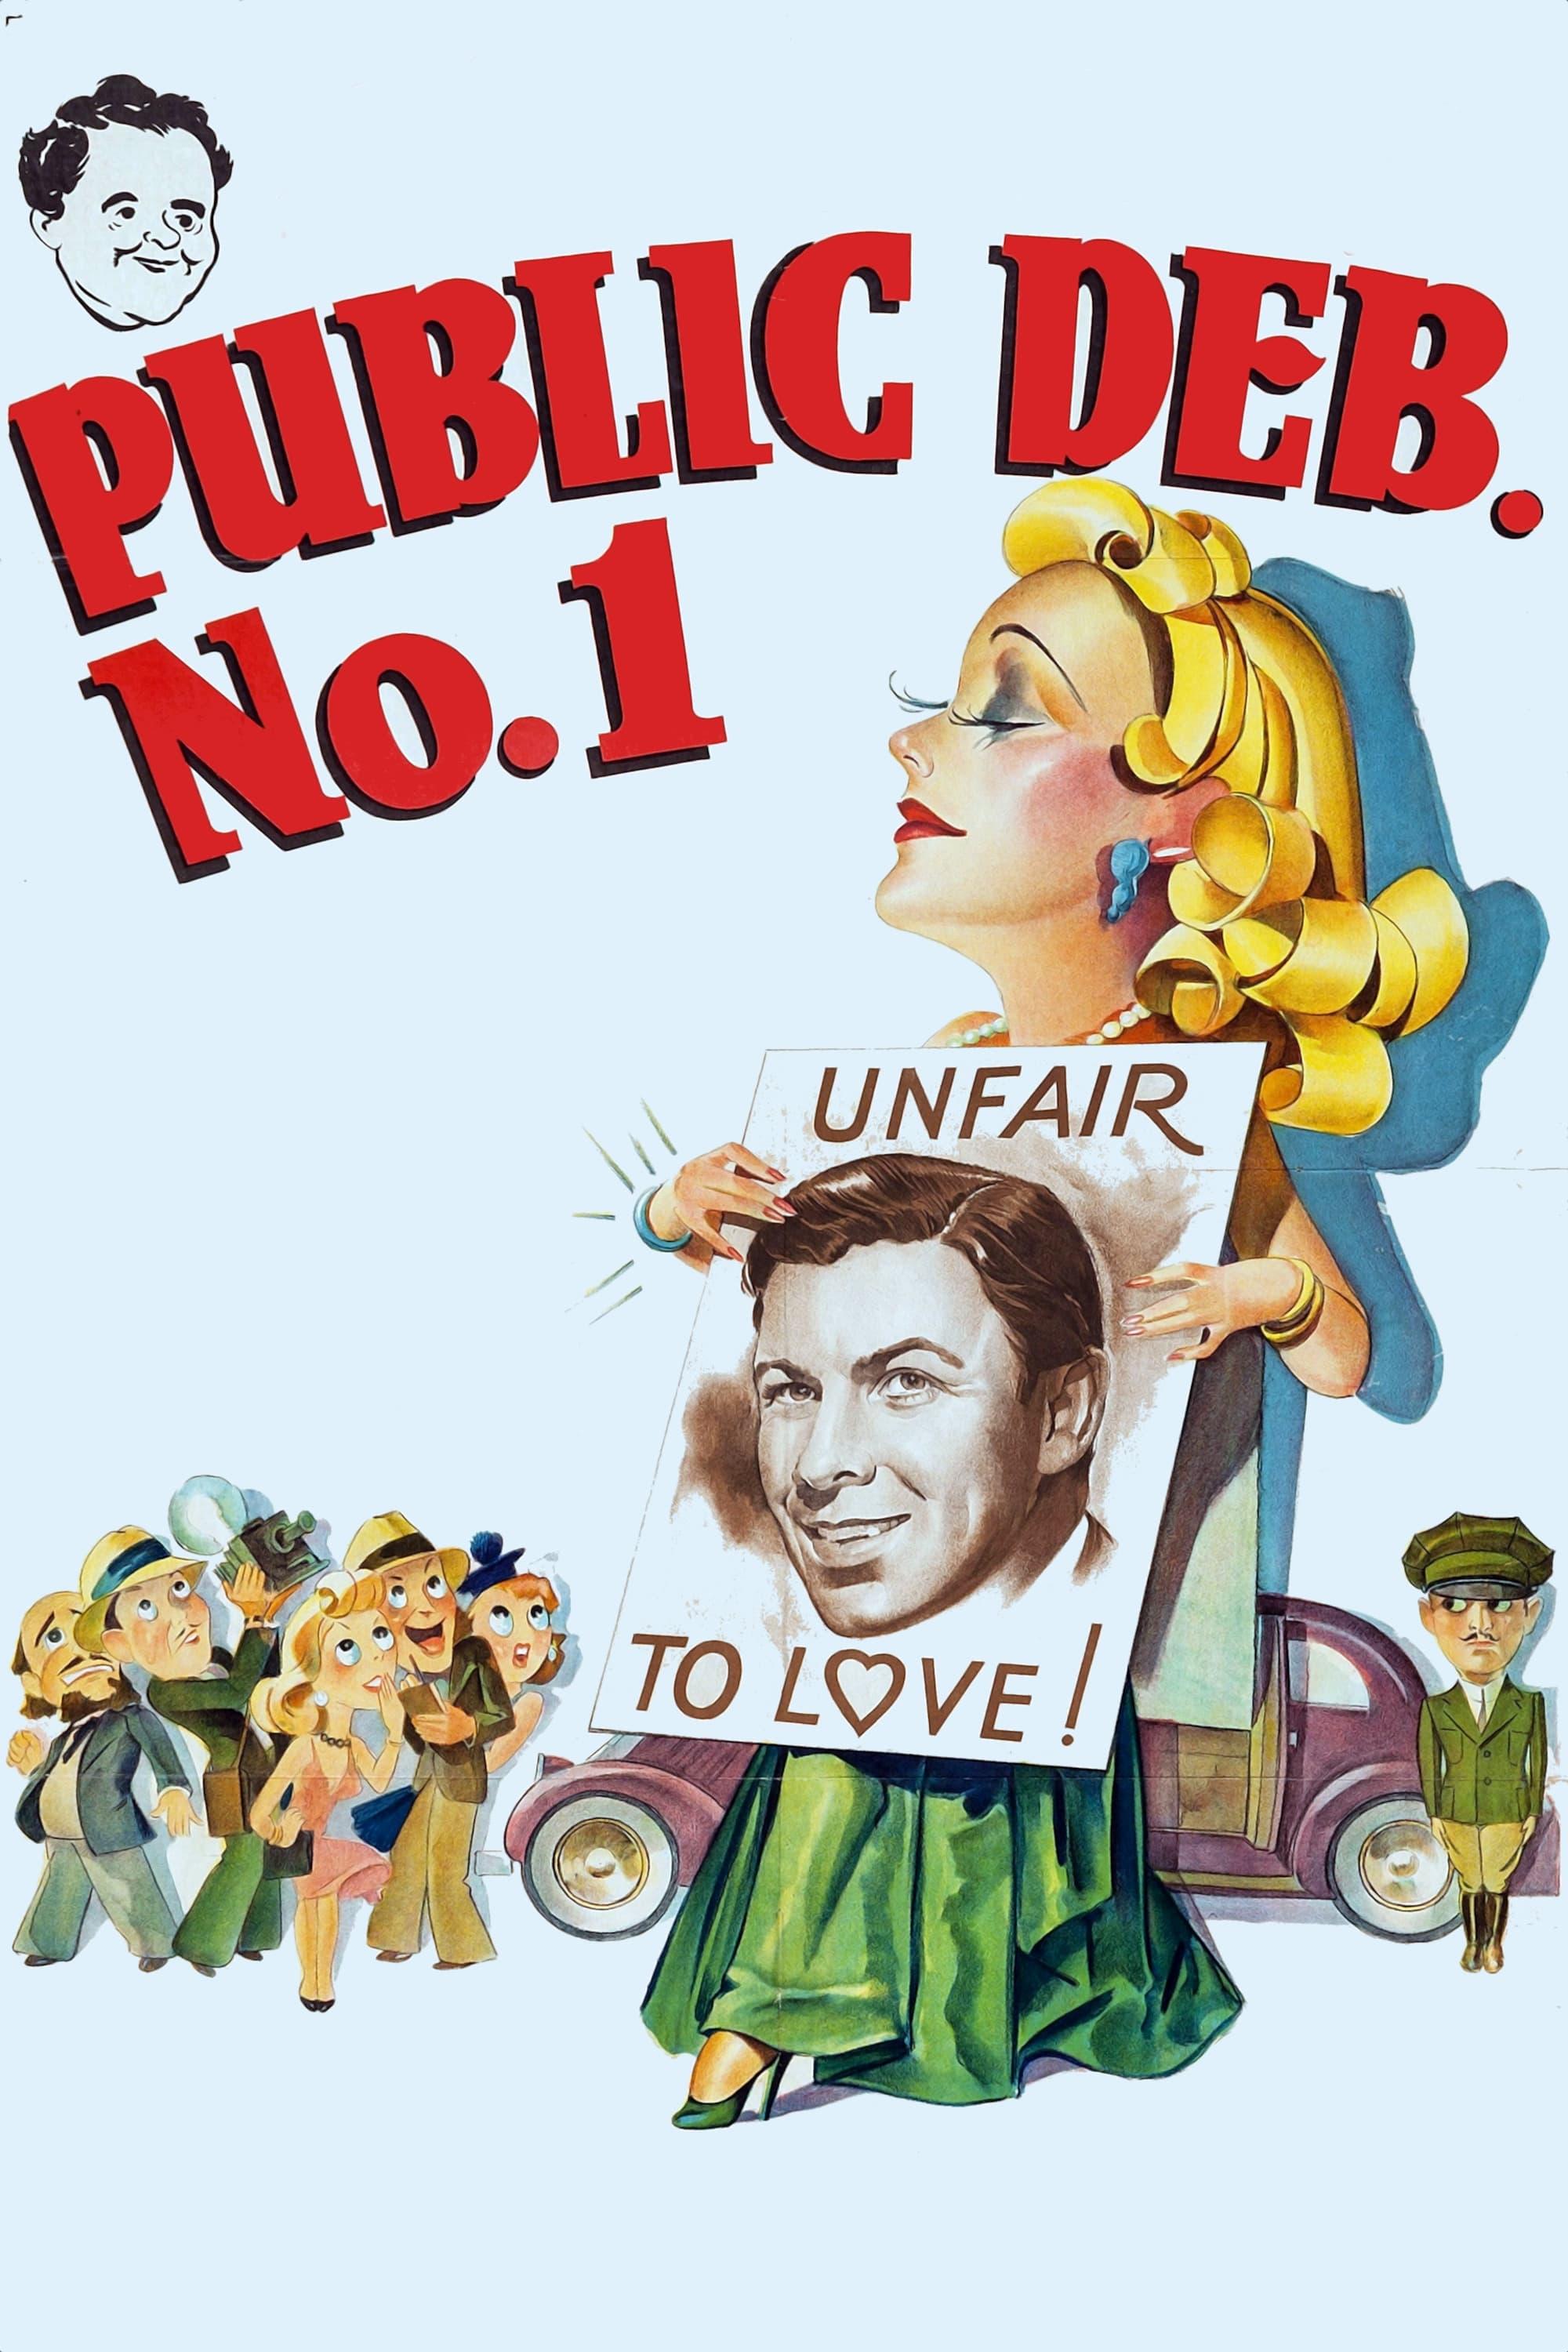 Public Deb No. 1 poster